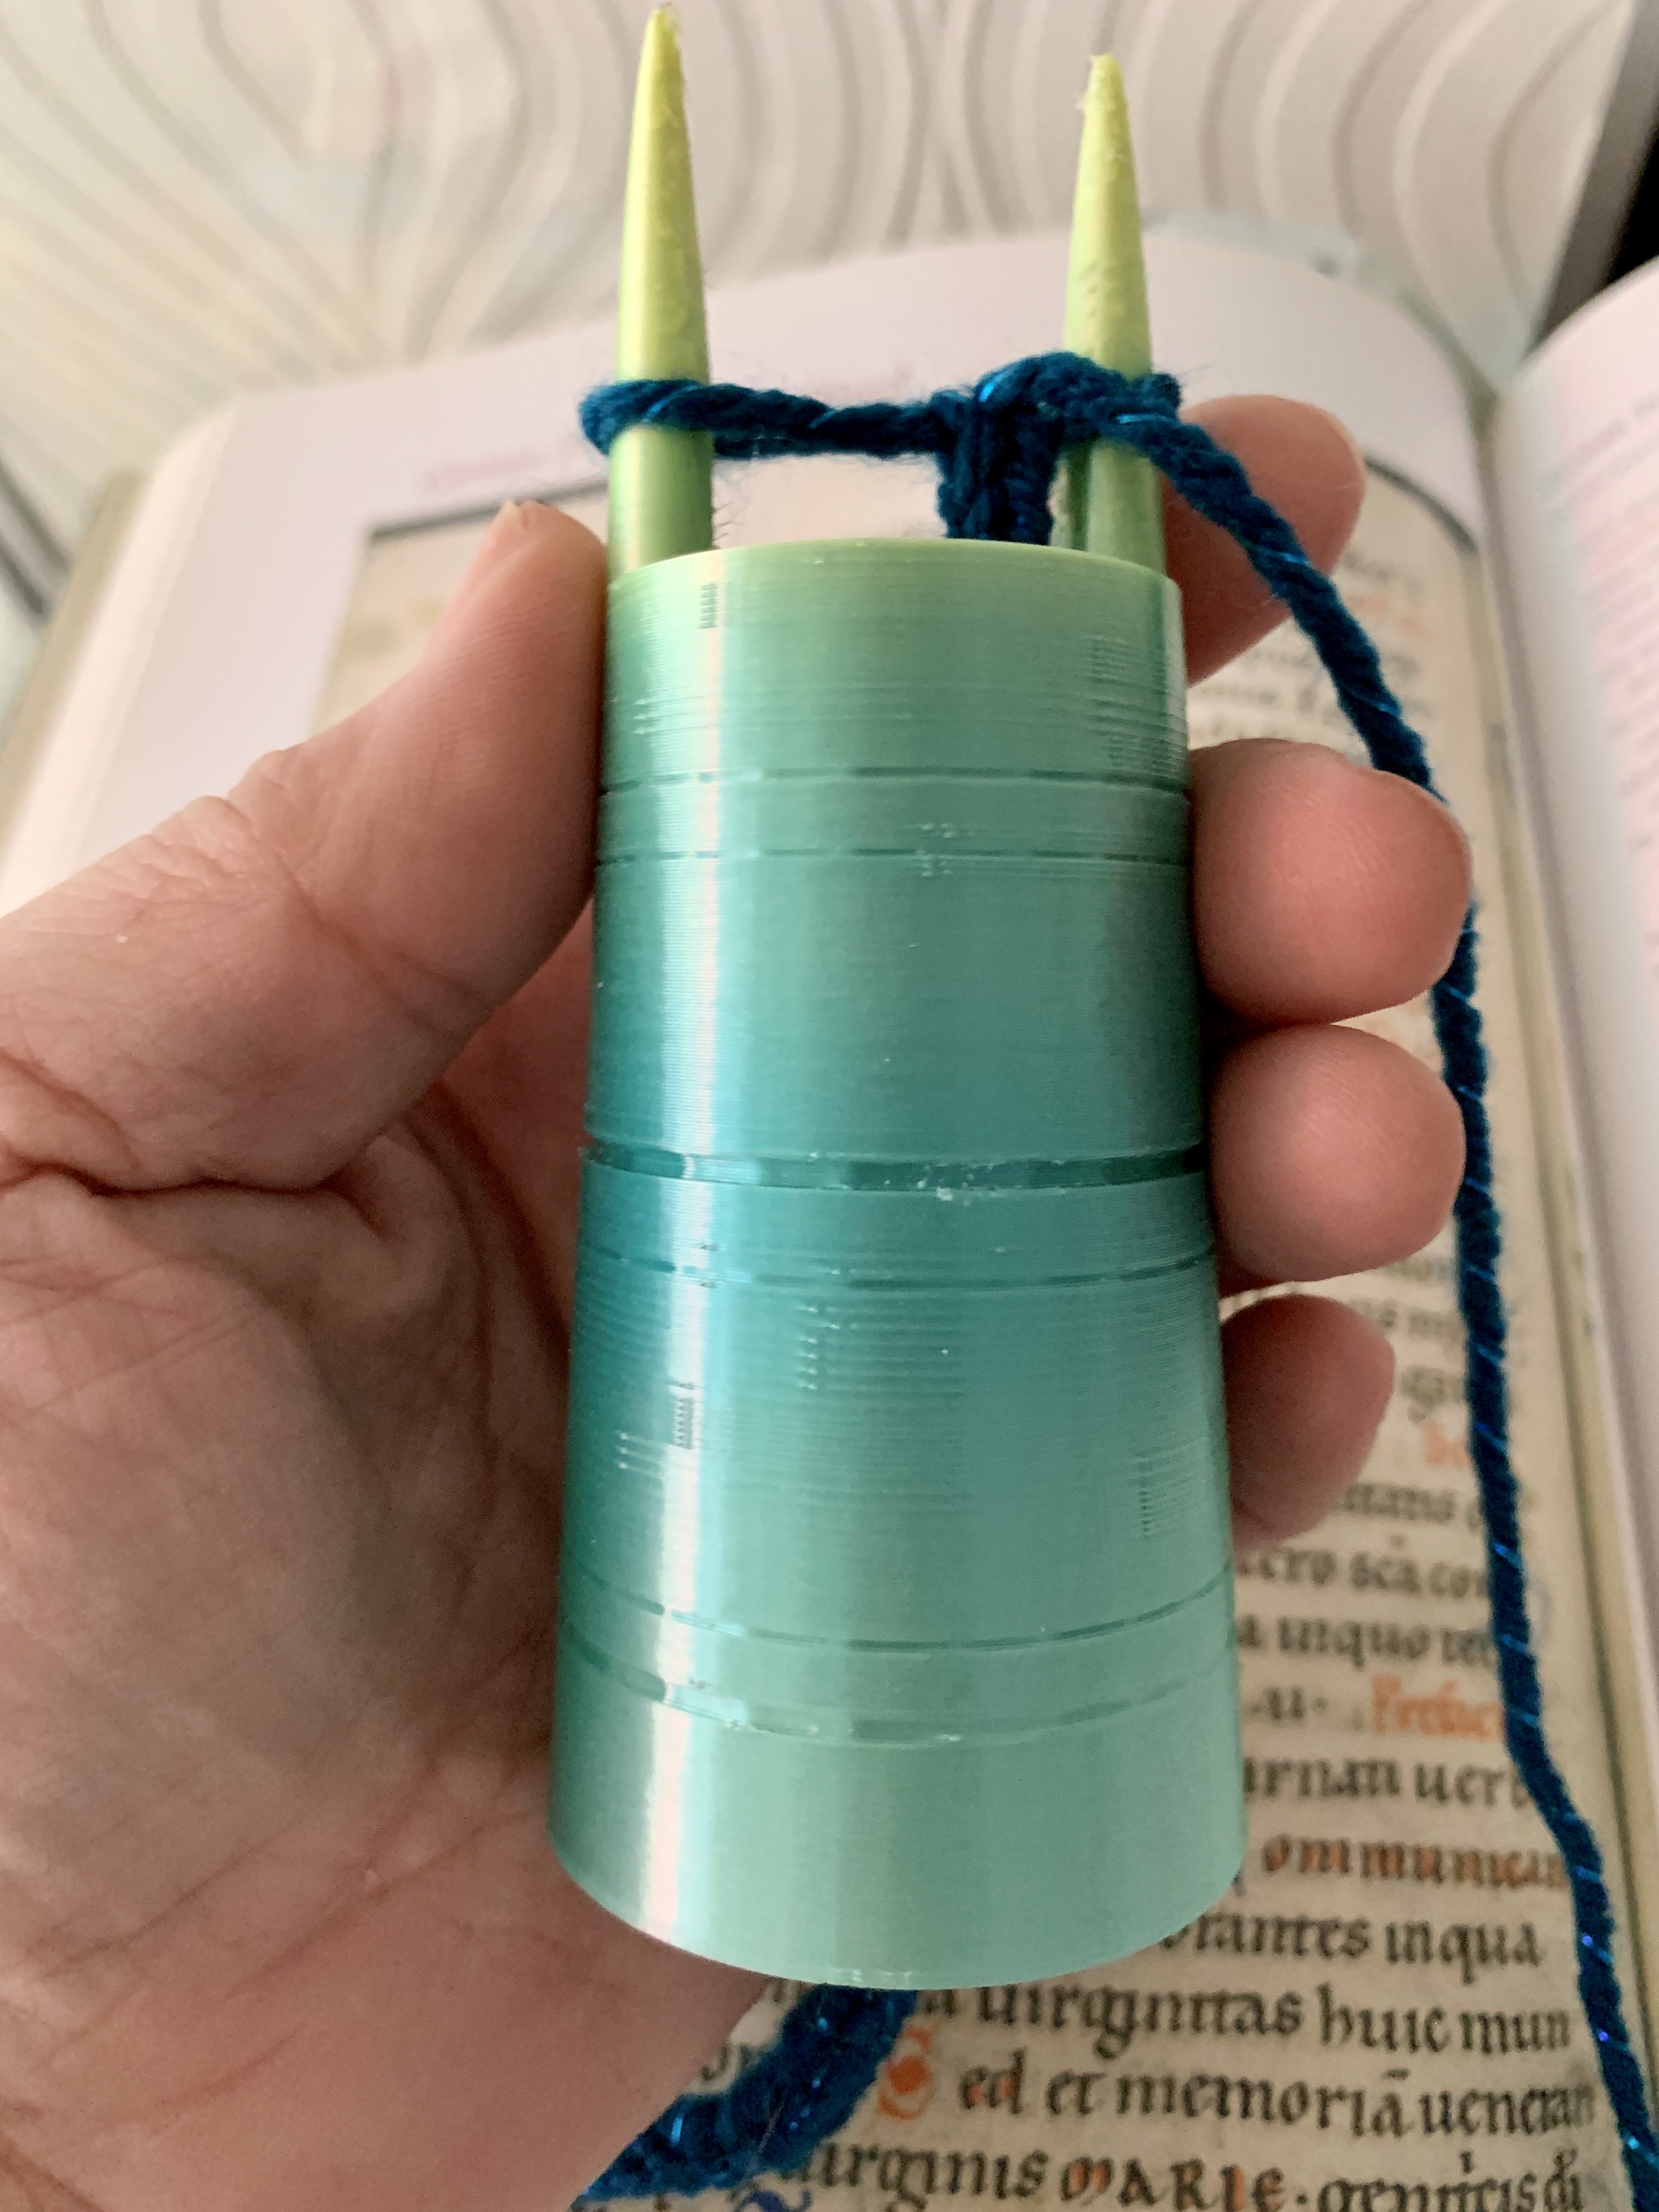 Lucet Fork, 3D Printed I-cord Maker, Gift for Crocheter, Knitter or